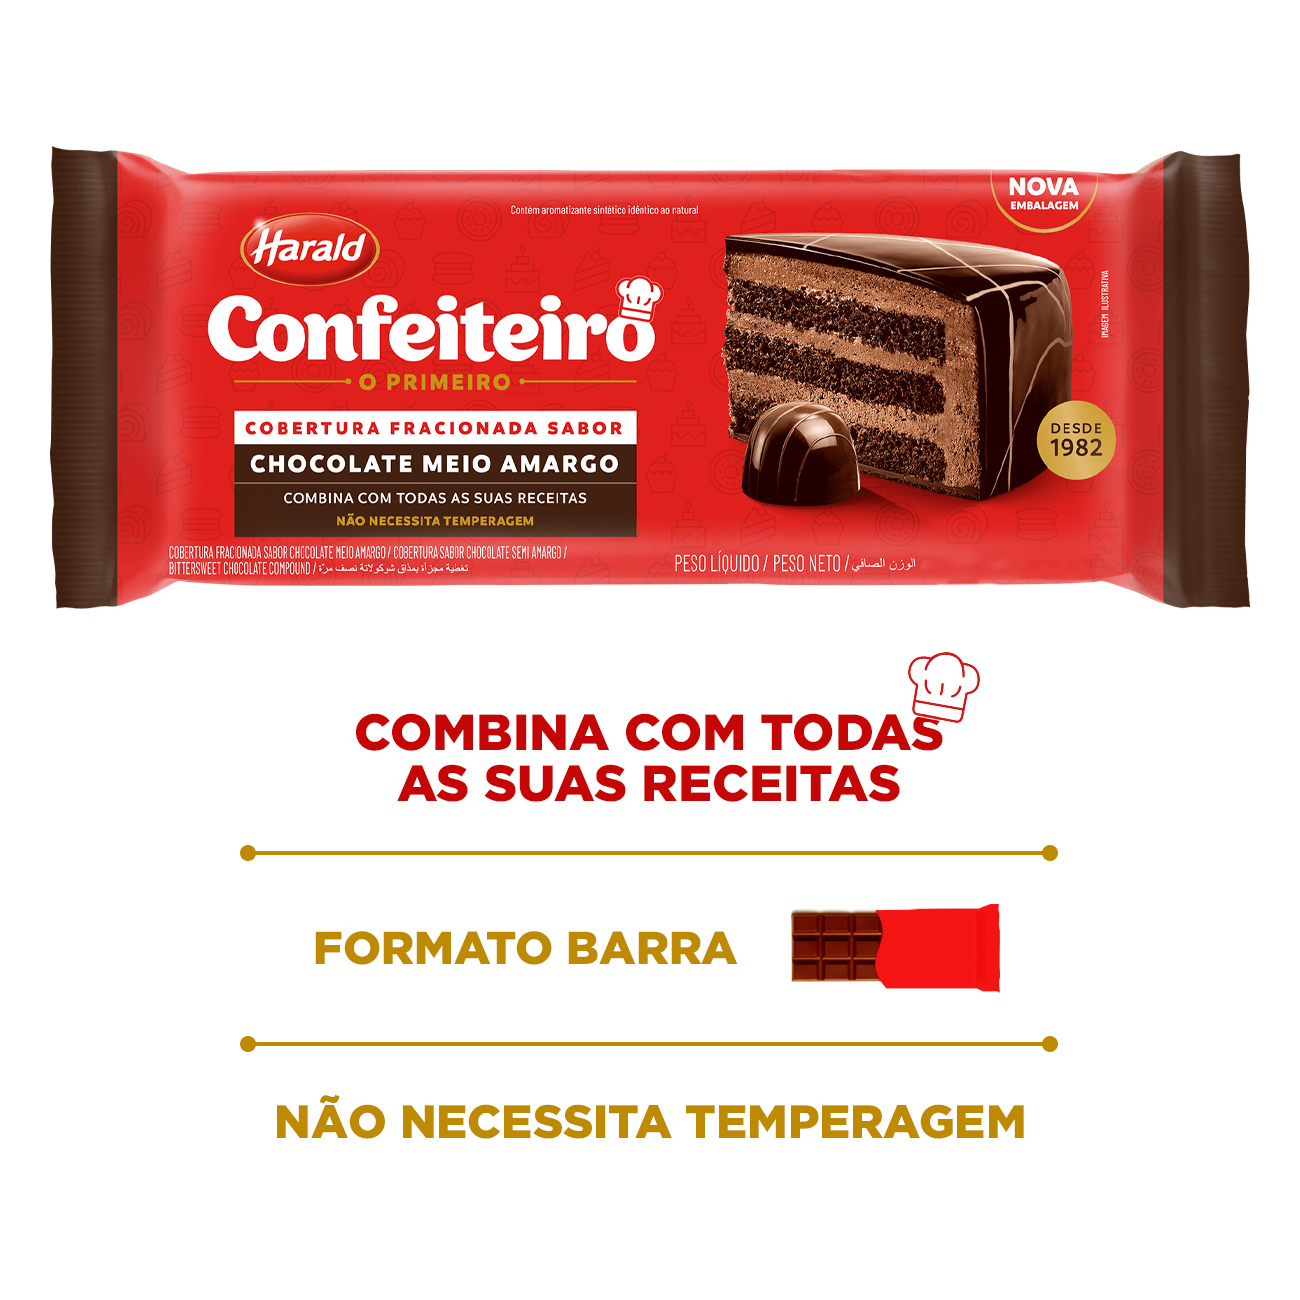 Cobertura de Chocolate em Barra Harald Confeiteiro Fracionada Meio Amargo 2,1kg